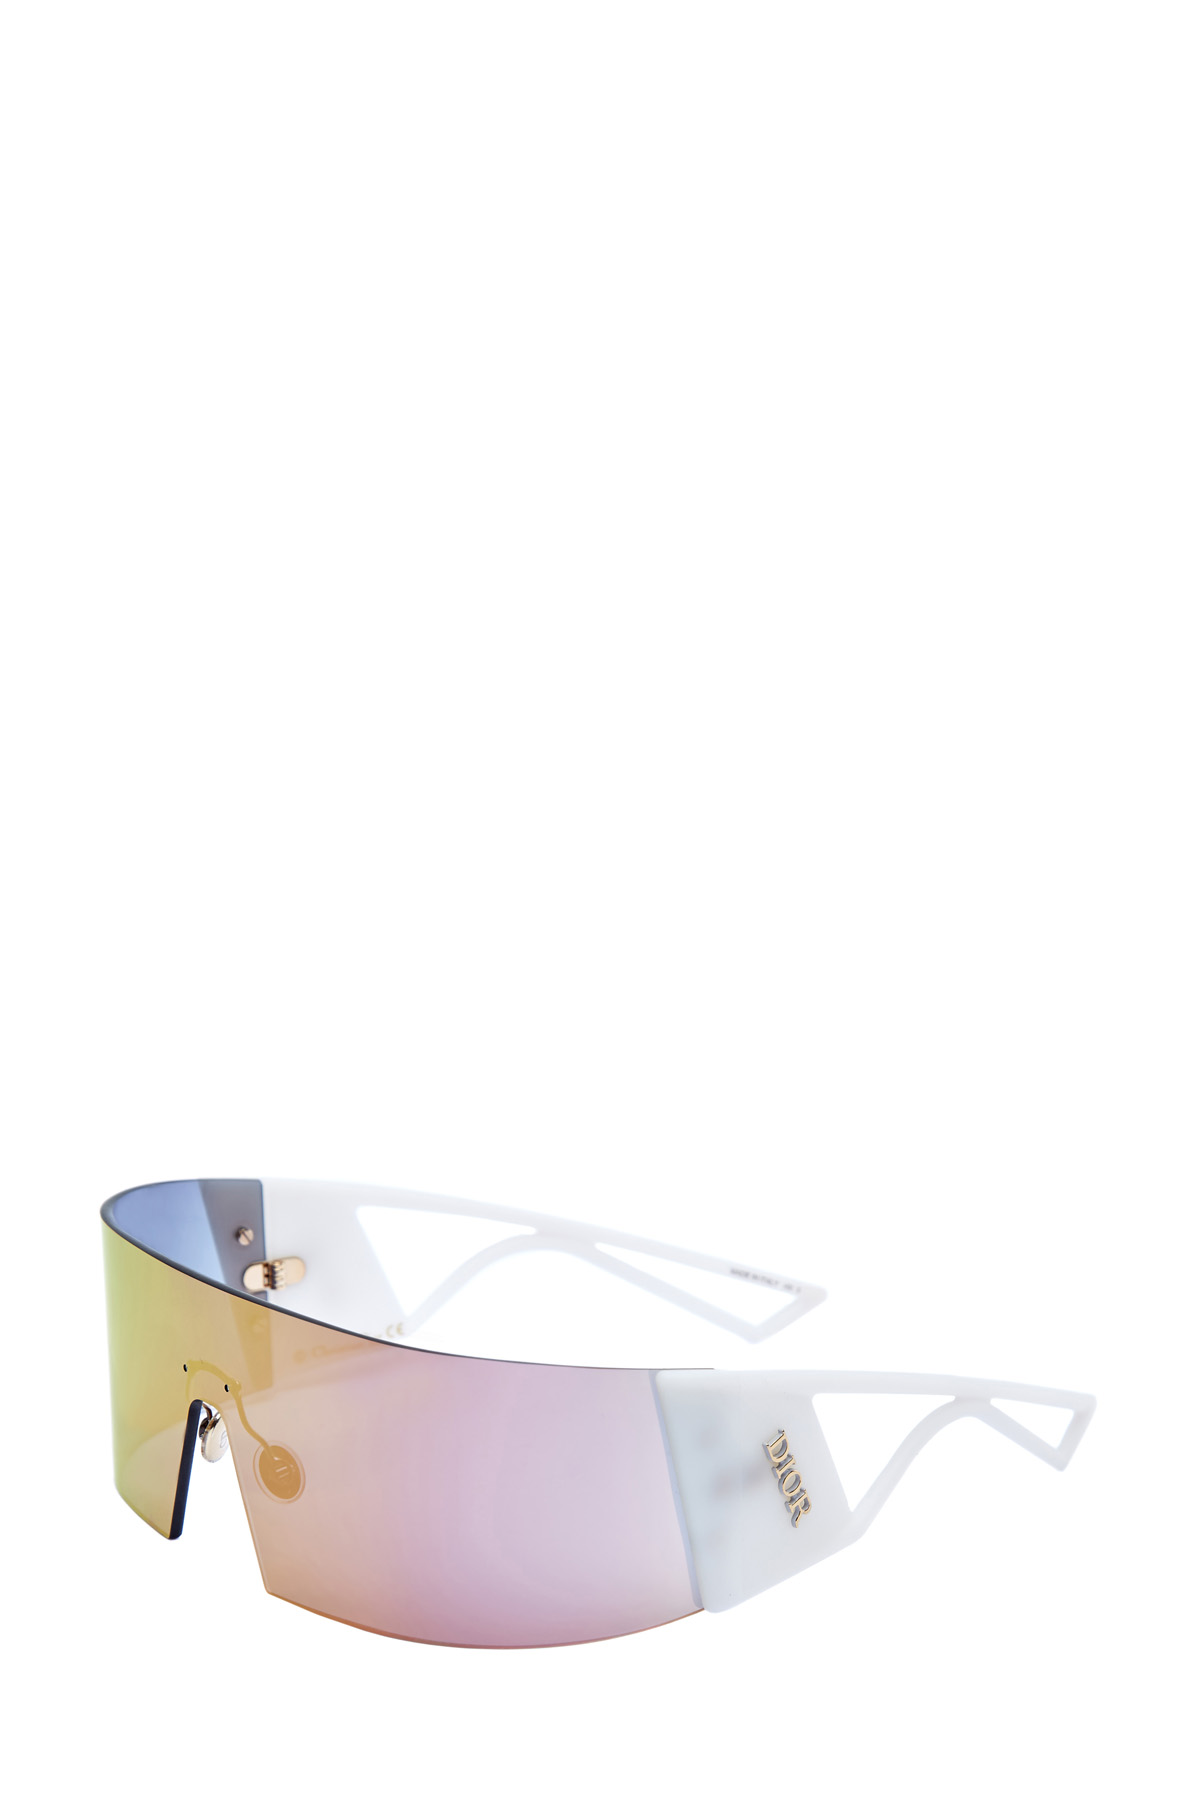 Очки-маска с голографическим напылением DIOR (sunglasses) women, цвет мульти, размер XS;S - фото 3